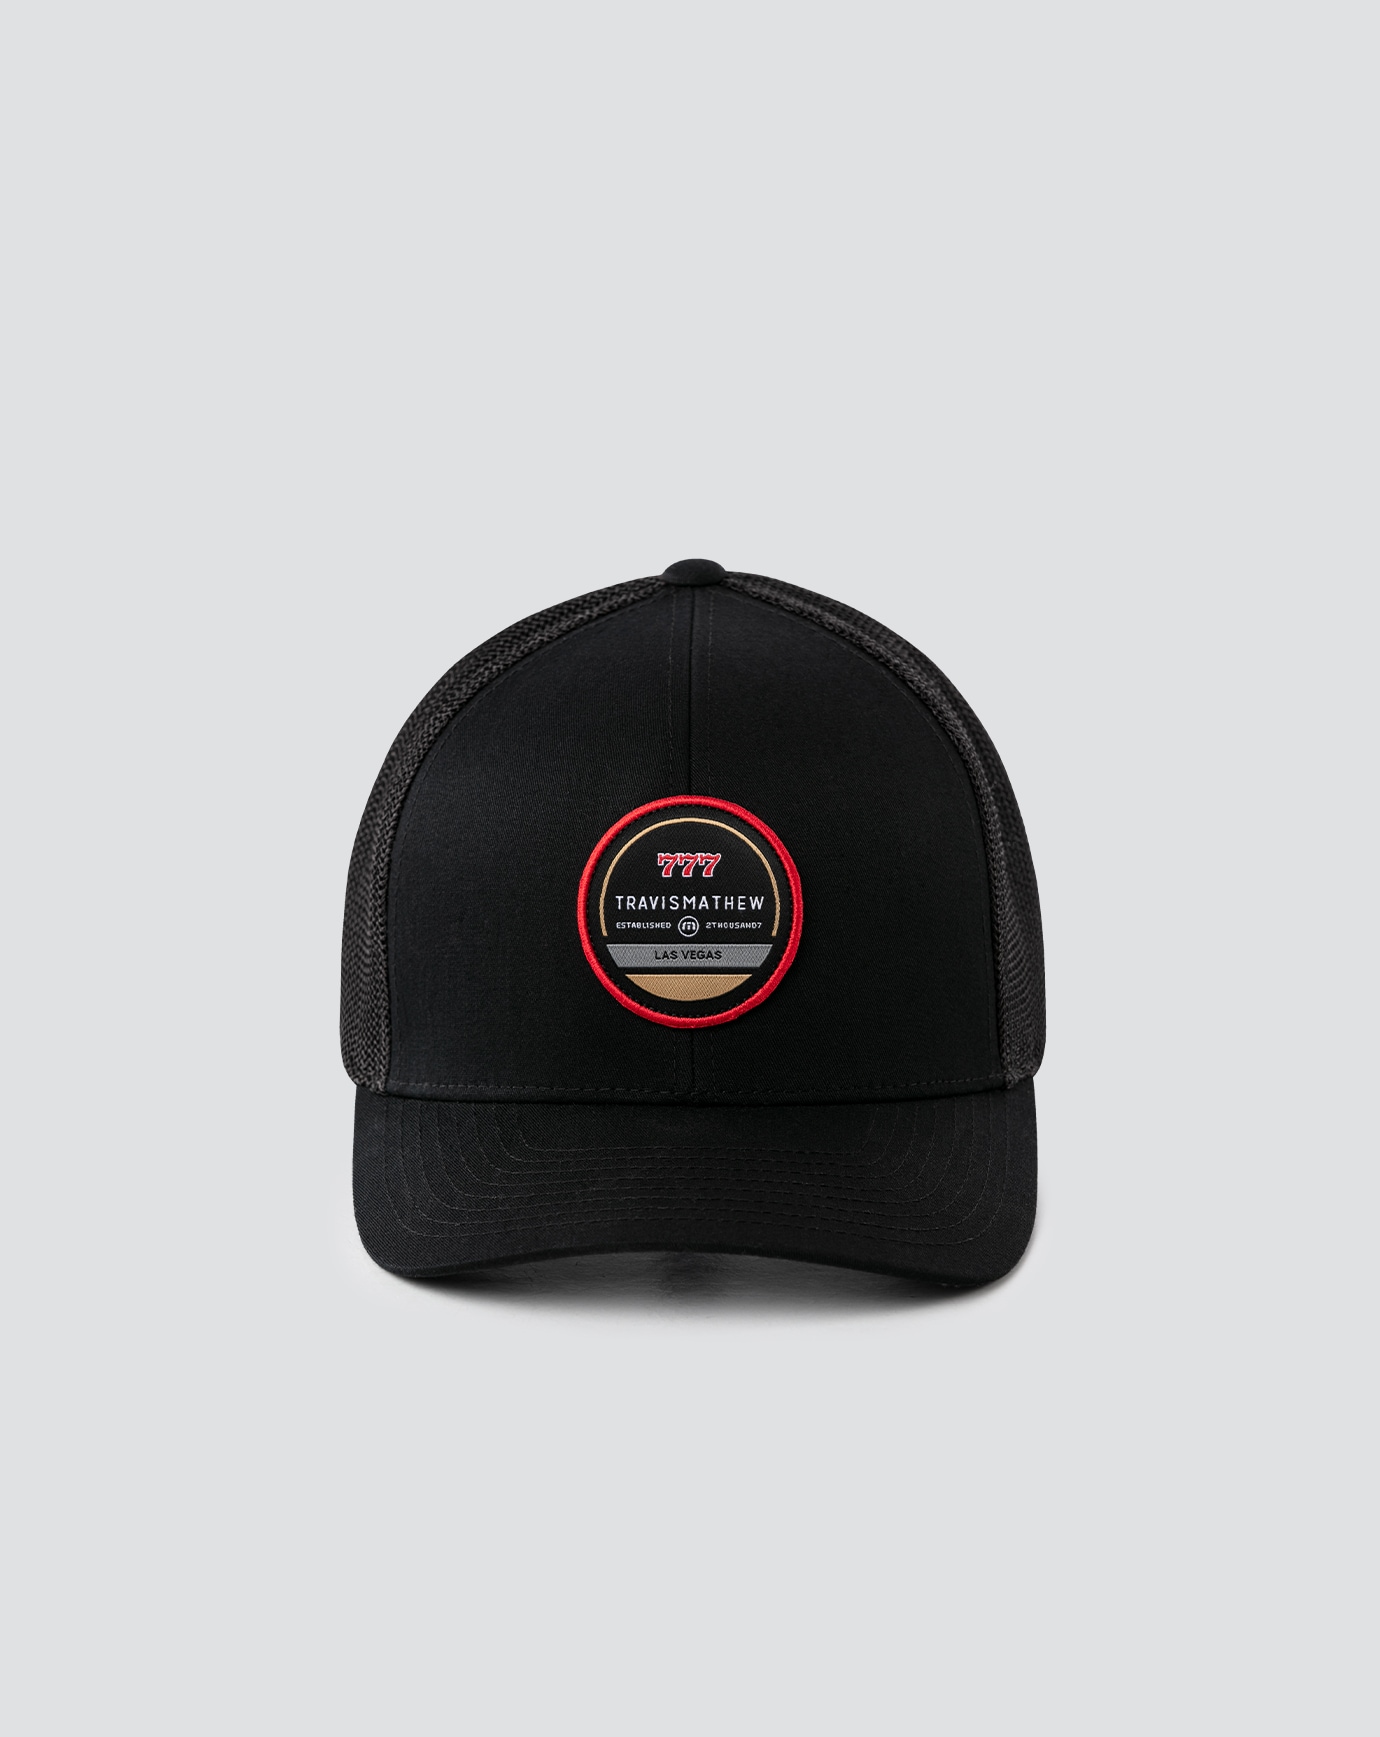 Related Product - MOJAVE SUNRISE SNAPBACK HAT